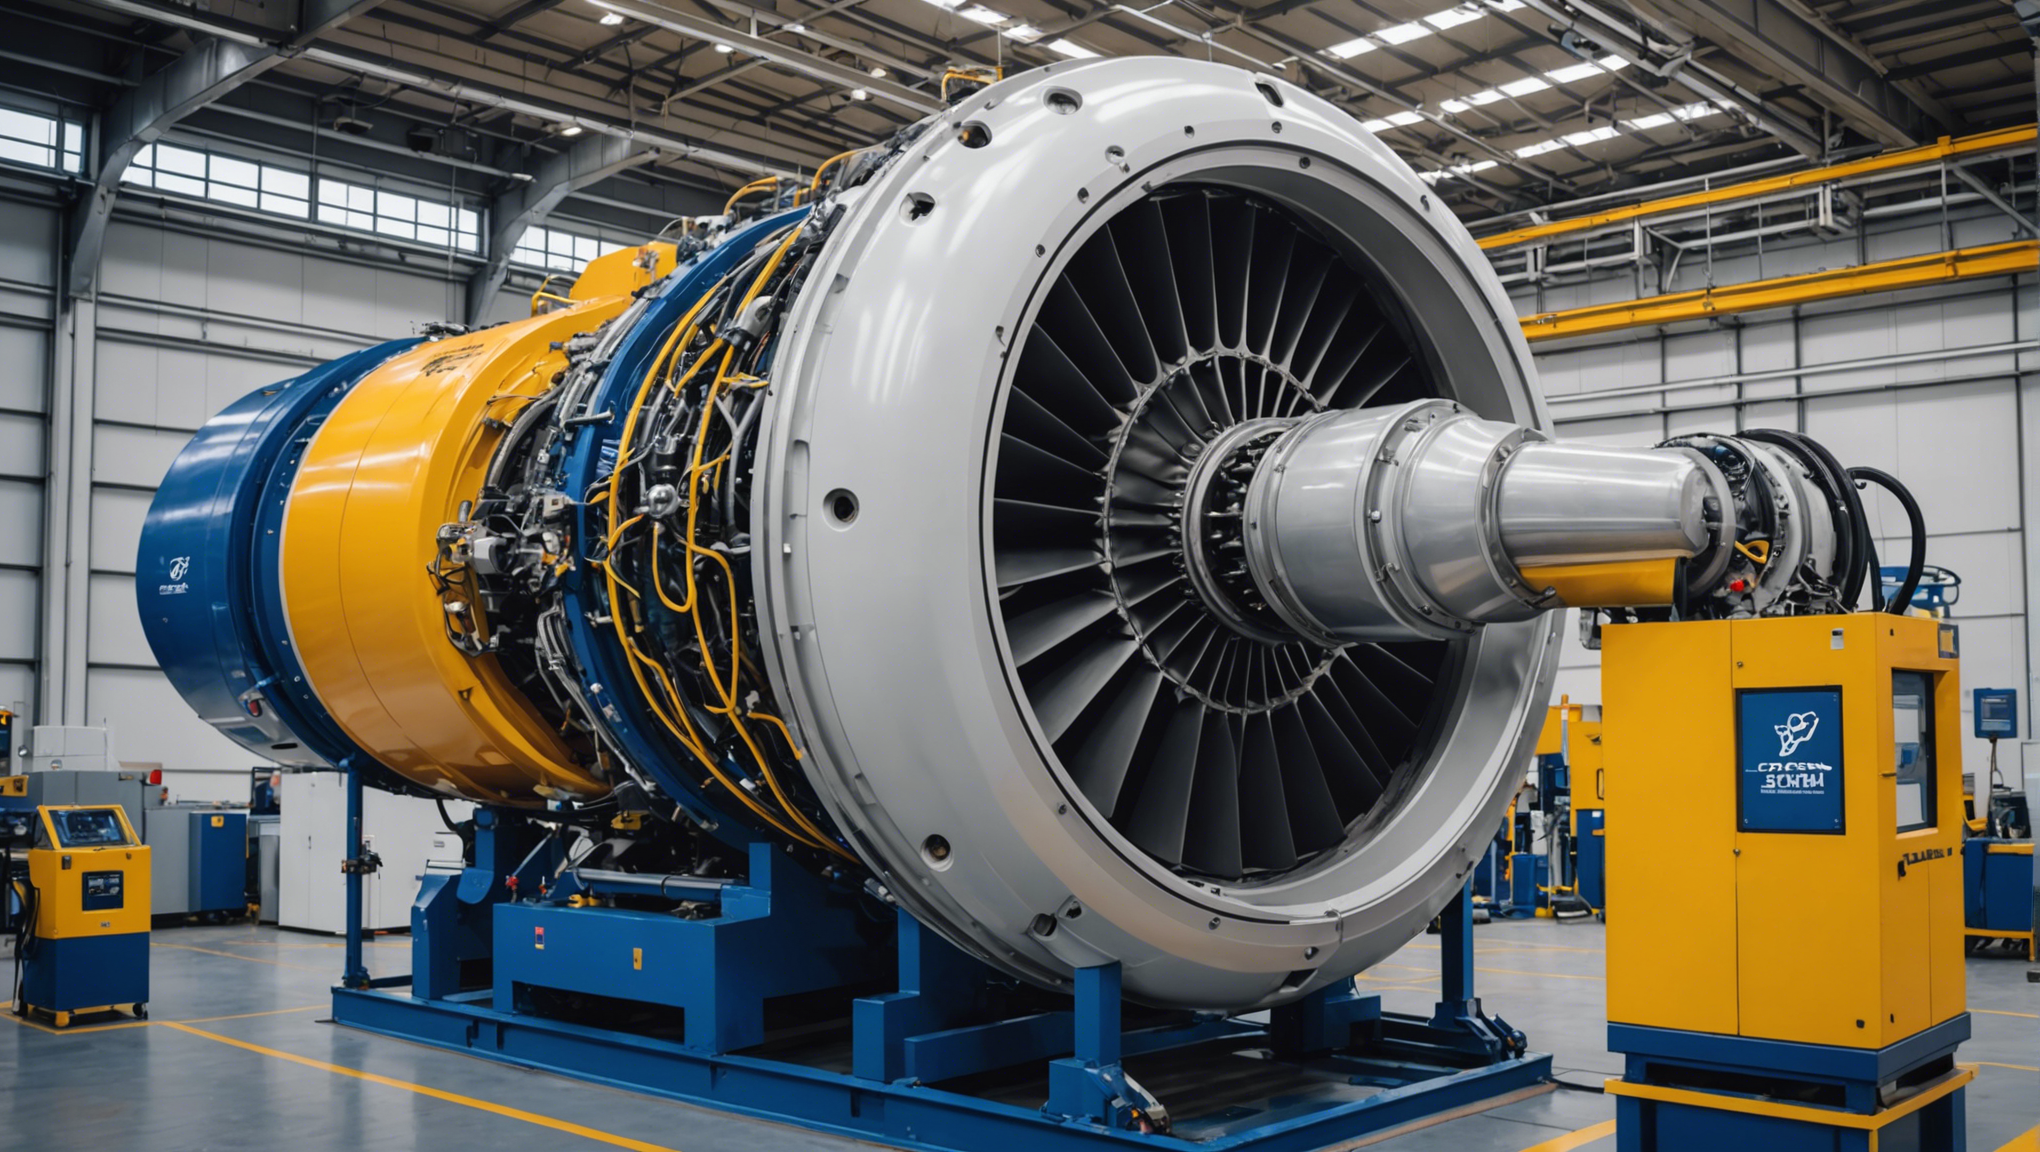 découvrez comment safran investit dans la maintenance des moteurs leap à bruxelles pour assurer des performances optimales et assurer la fiabilité des avions.